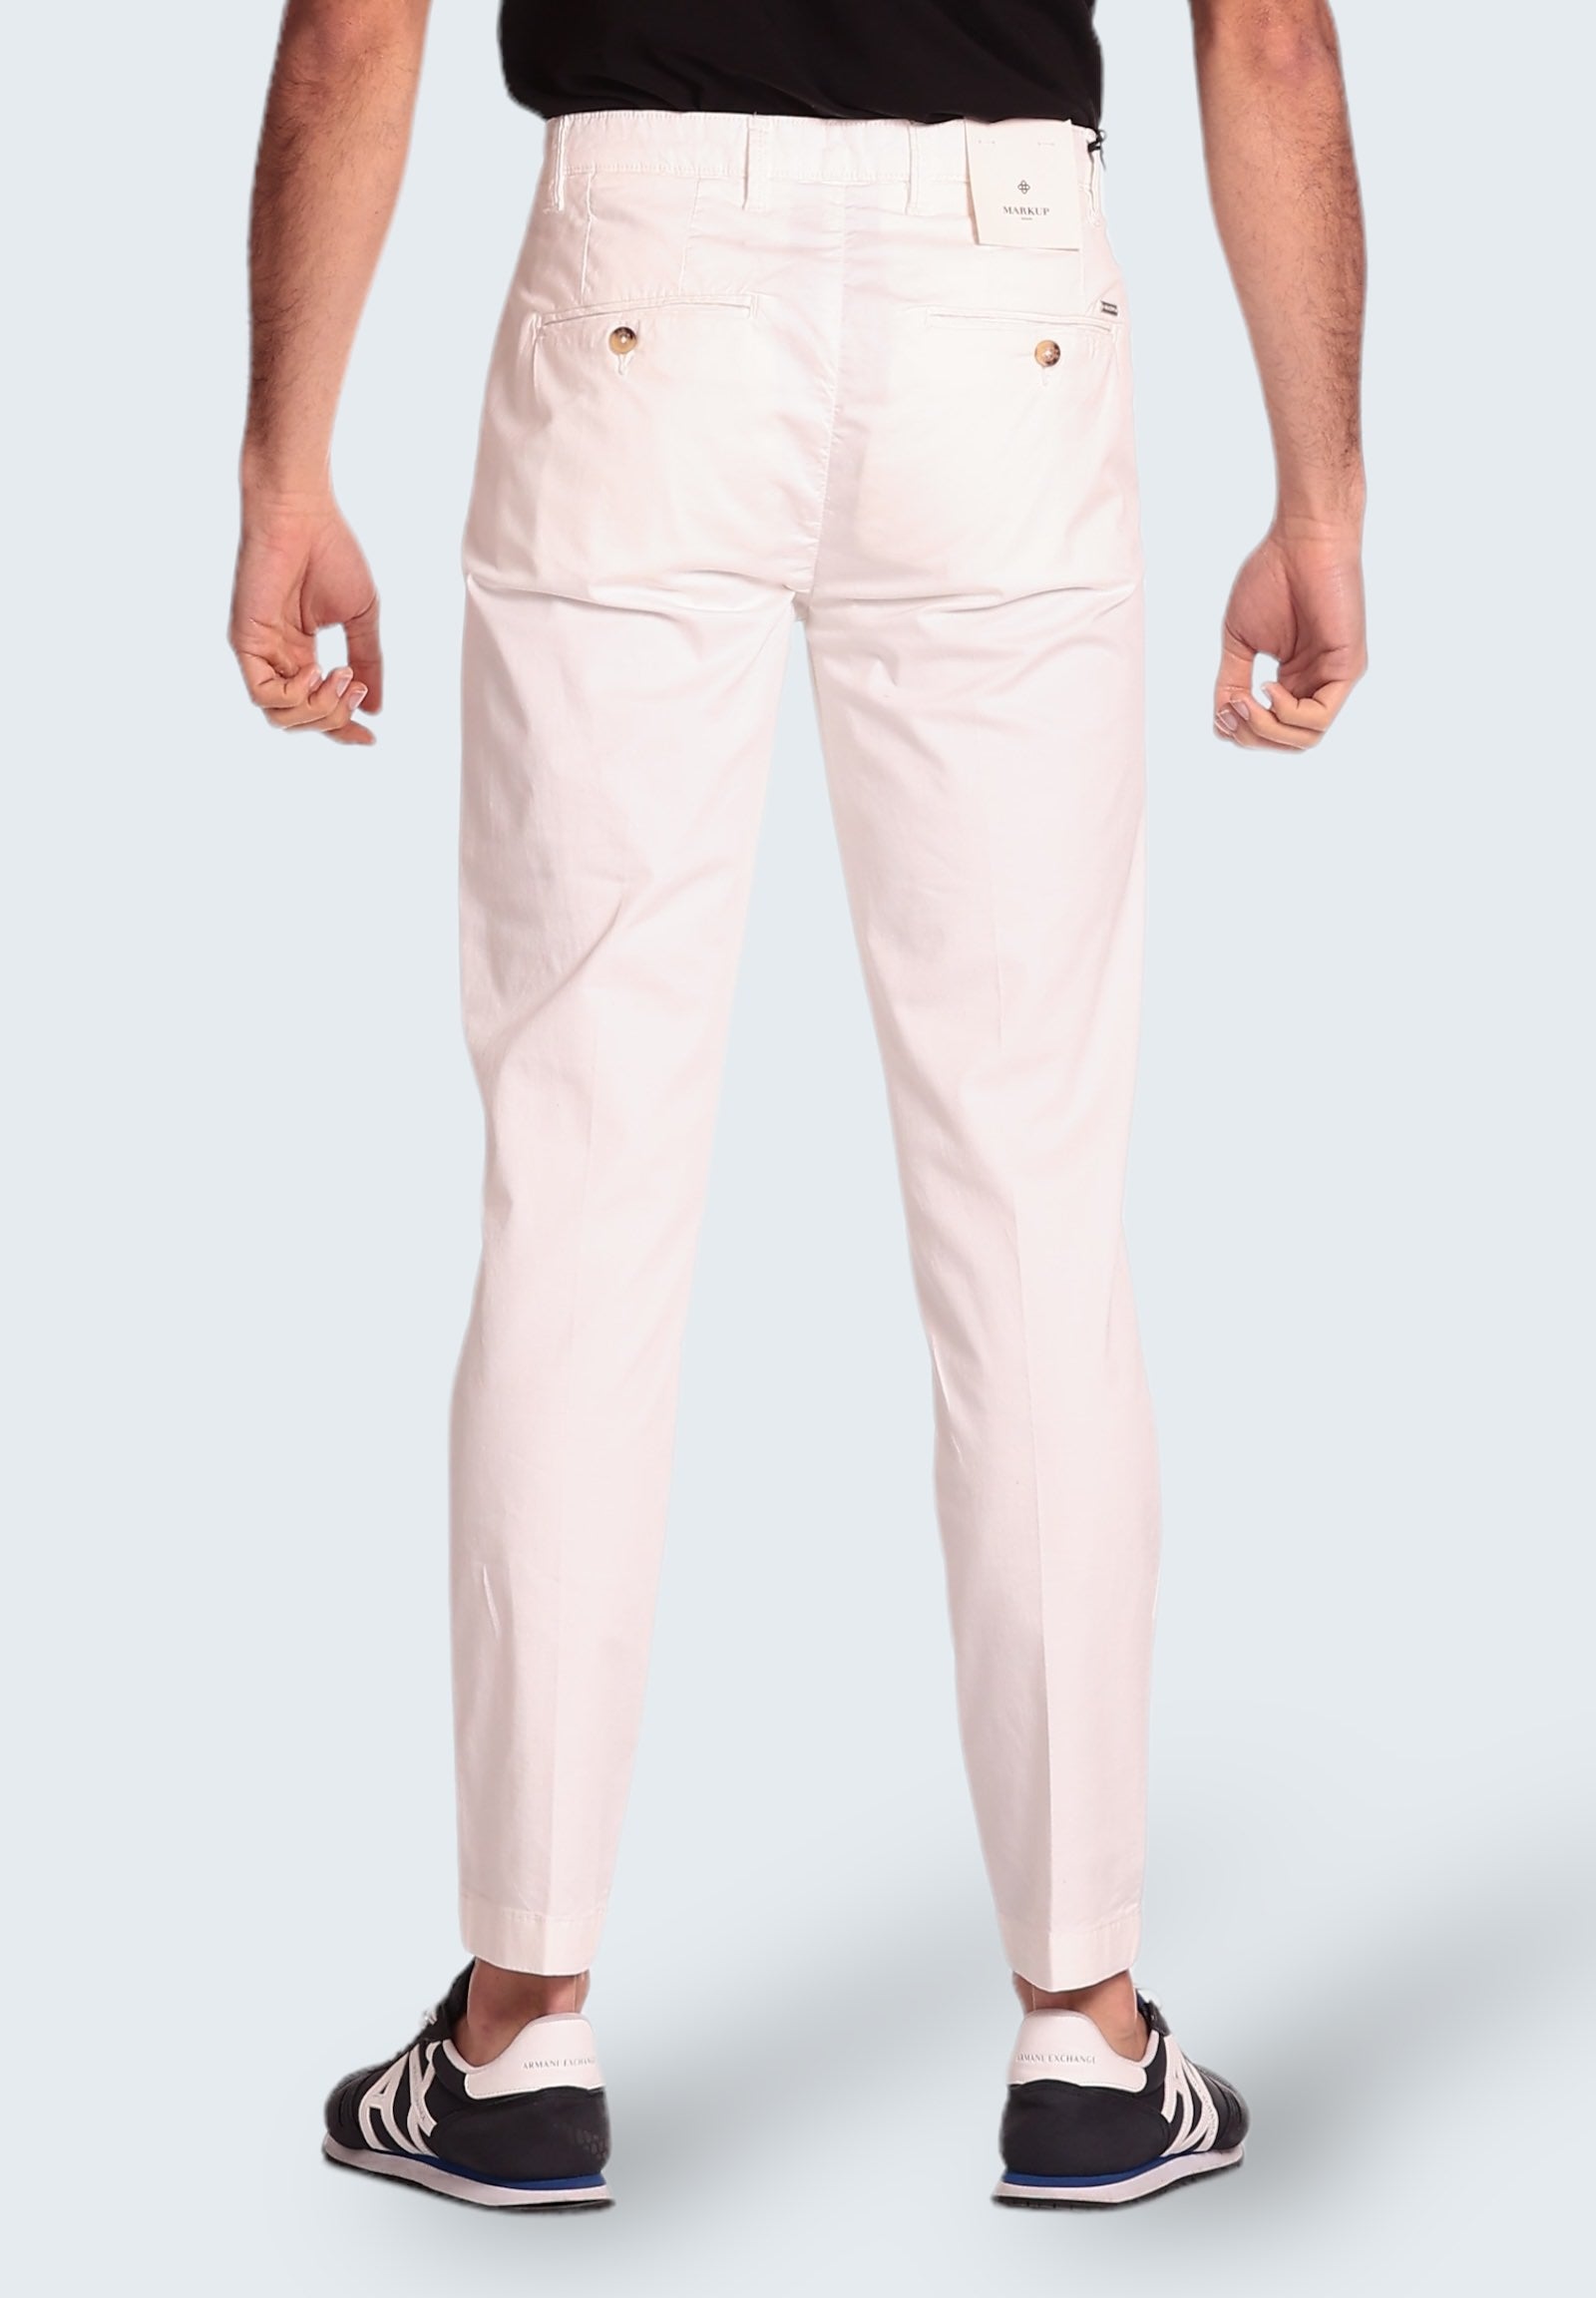 Pantaloni Mk15100 Bianco